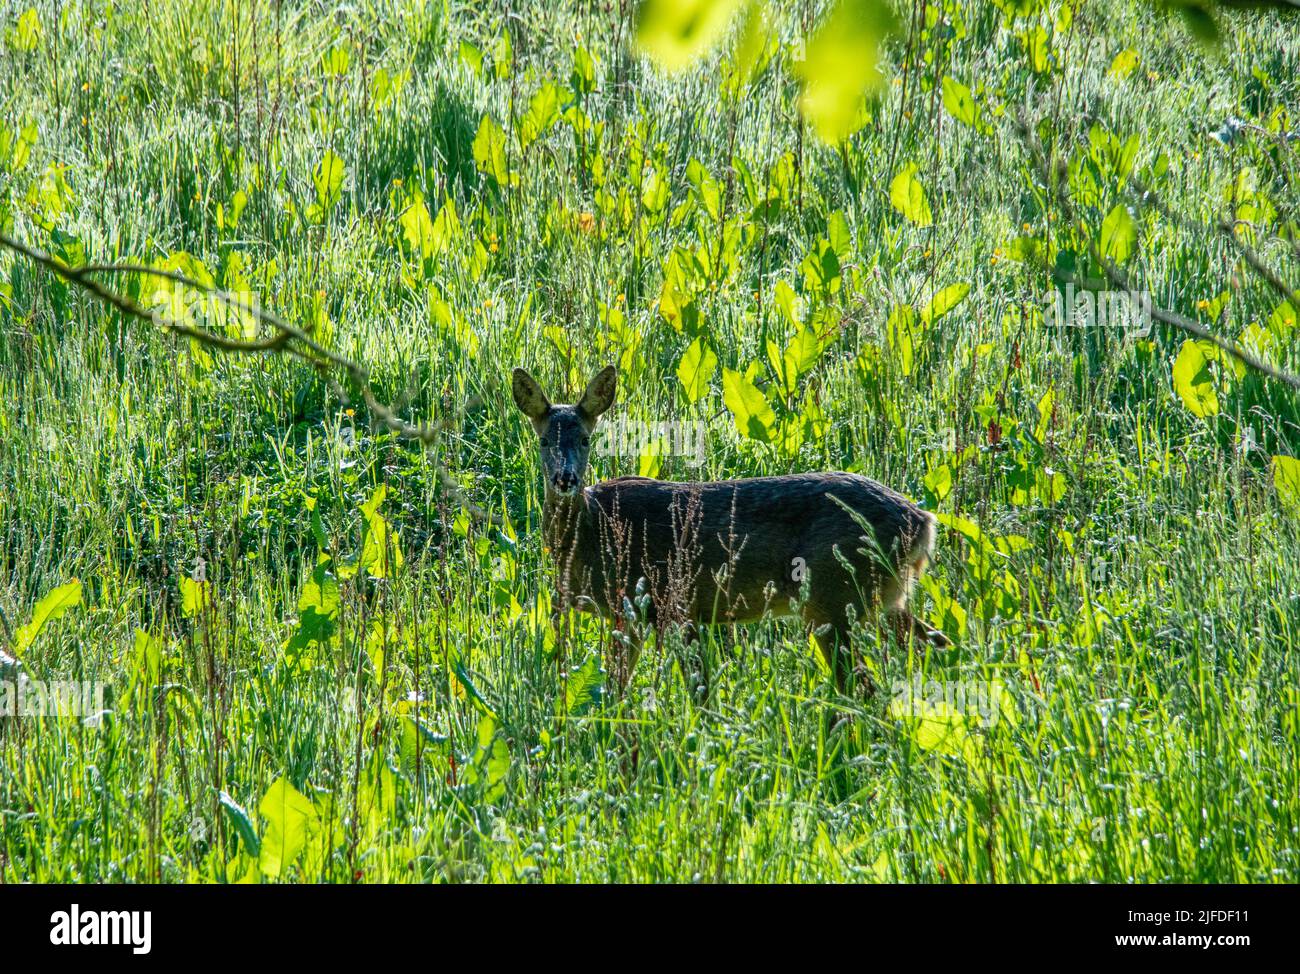 Roe deer in meadow in summer Stock Photo